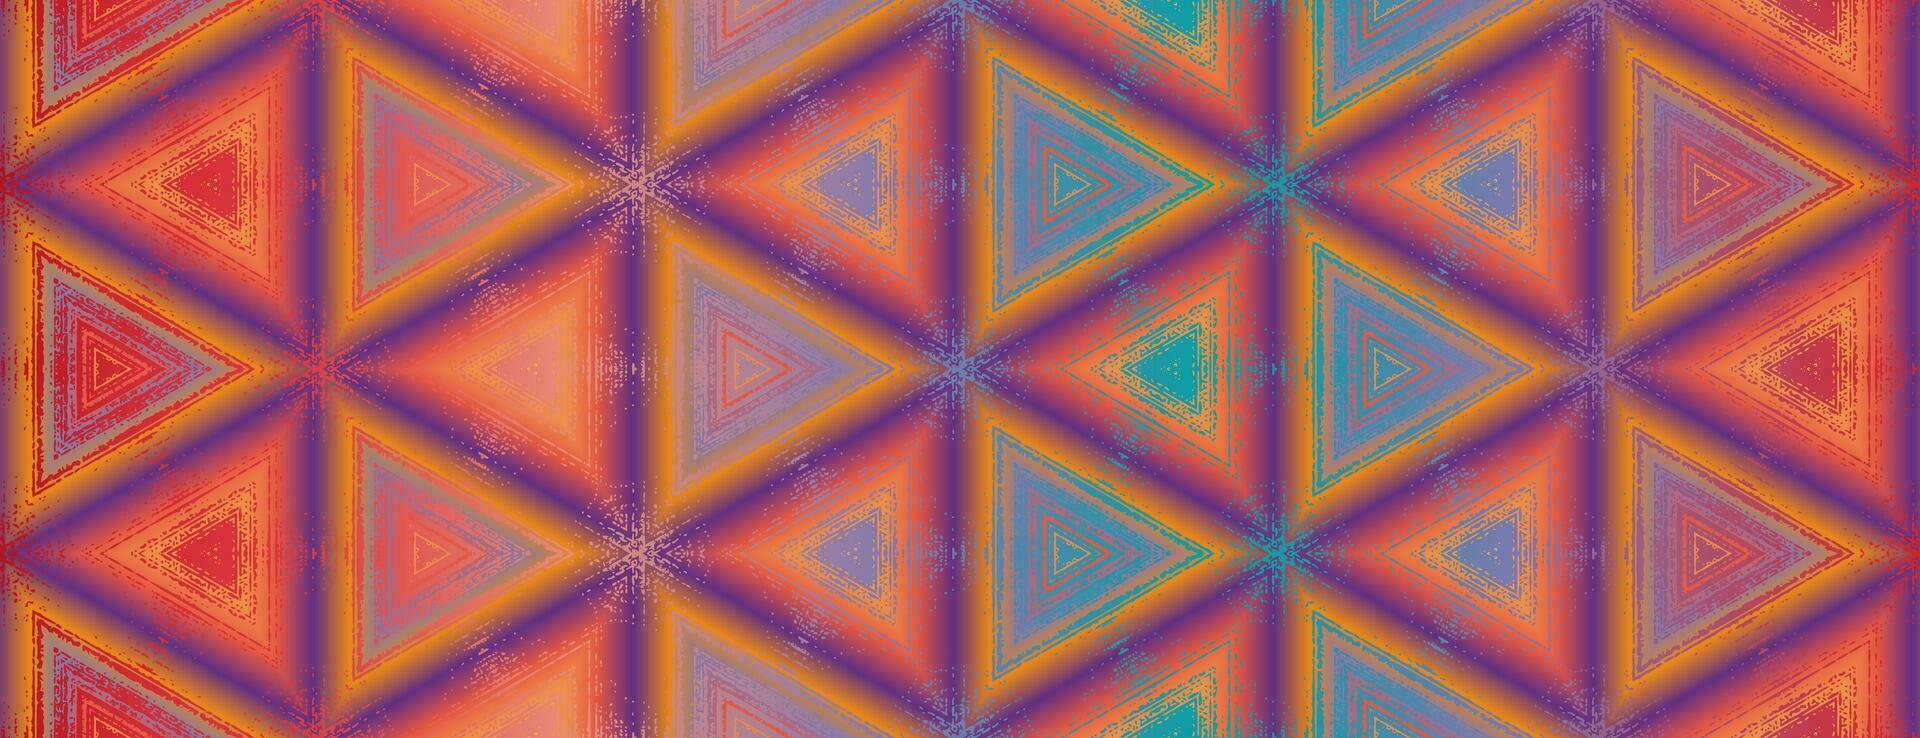 nahtlos abstrakt multi farbig lila, orange, Gelb, Viridian Grün, rot texturiert Kaleidoskop Muster. symmetrisch geometrisch Ornament zum Verpackung Design, Verpackung Papier, Hintergrund, Hintergrund. vektor